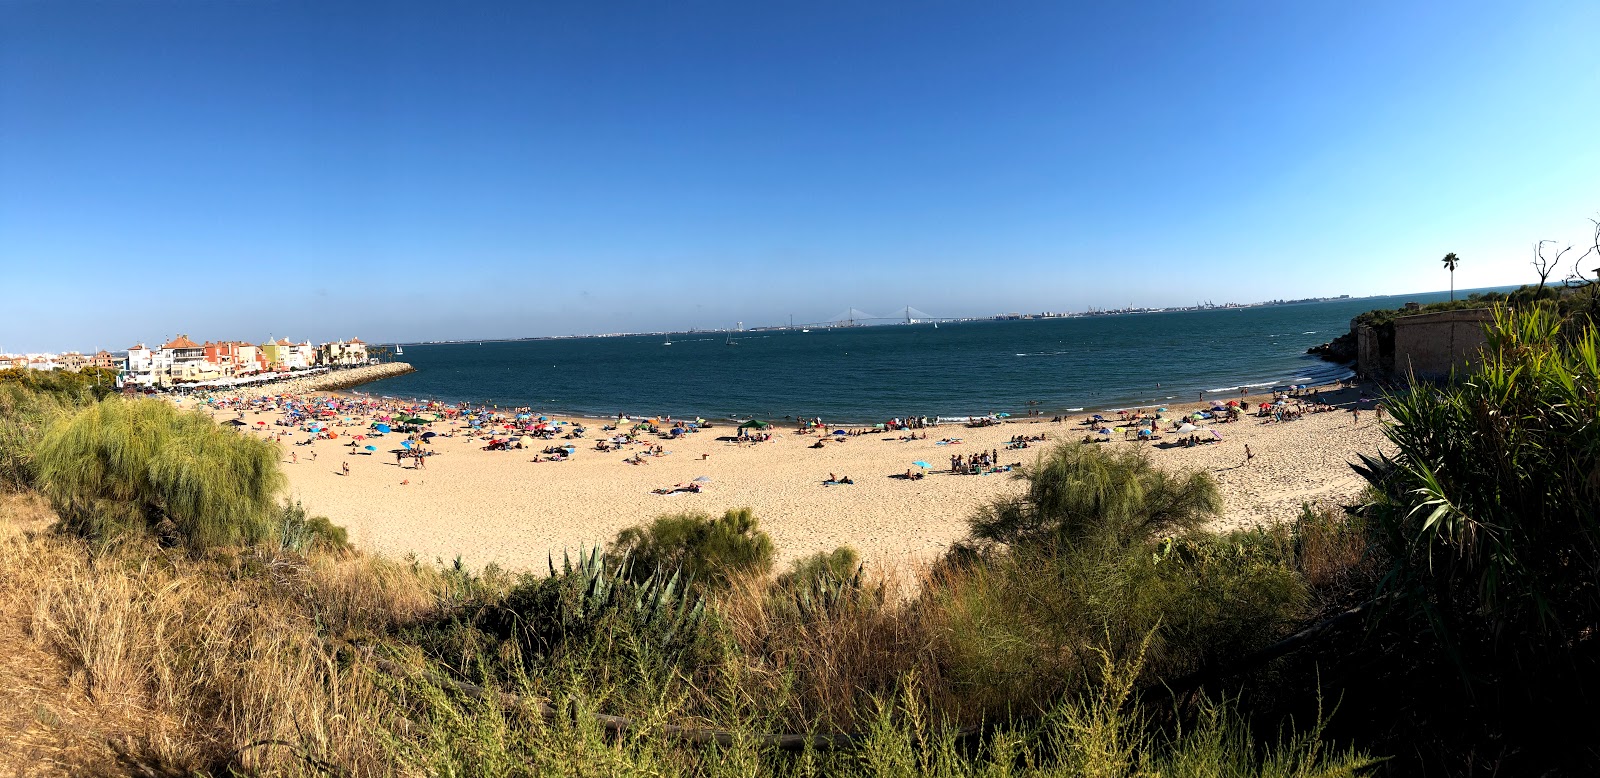 Playa de la Muralla'in fotoğrafı geniş ile birlikte